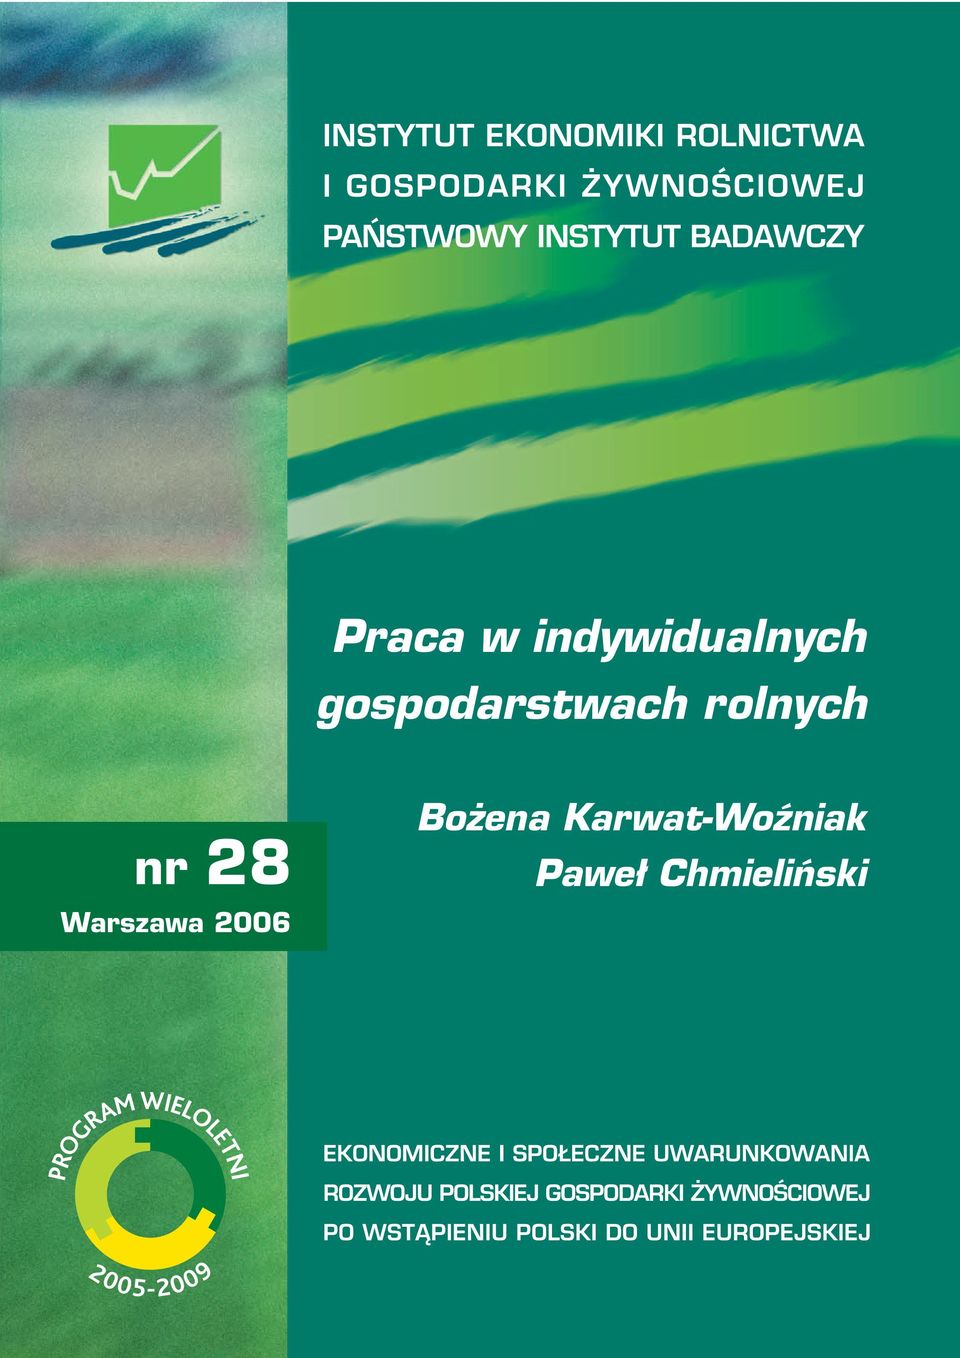 28 Warszawa 2006 Bożena